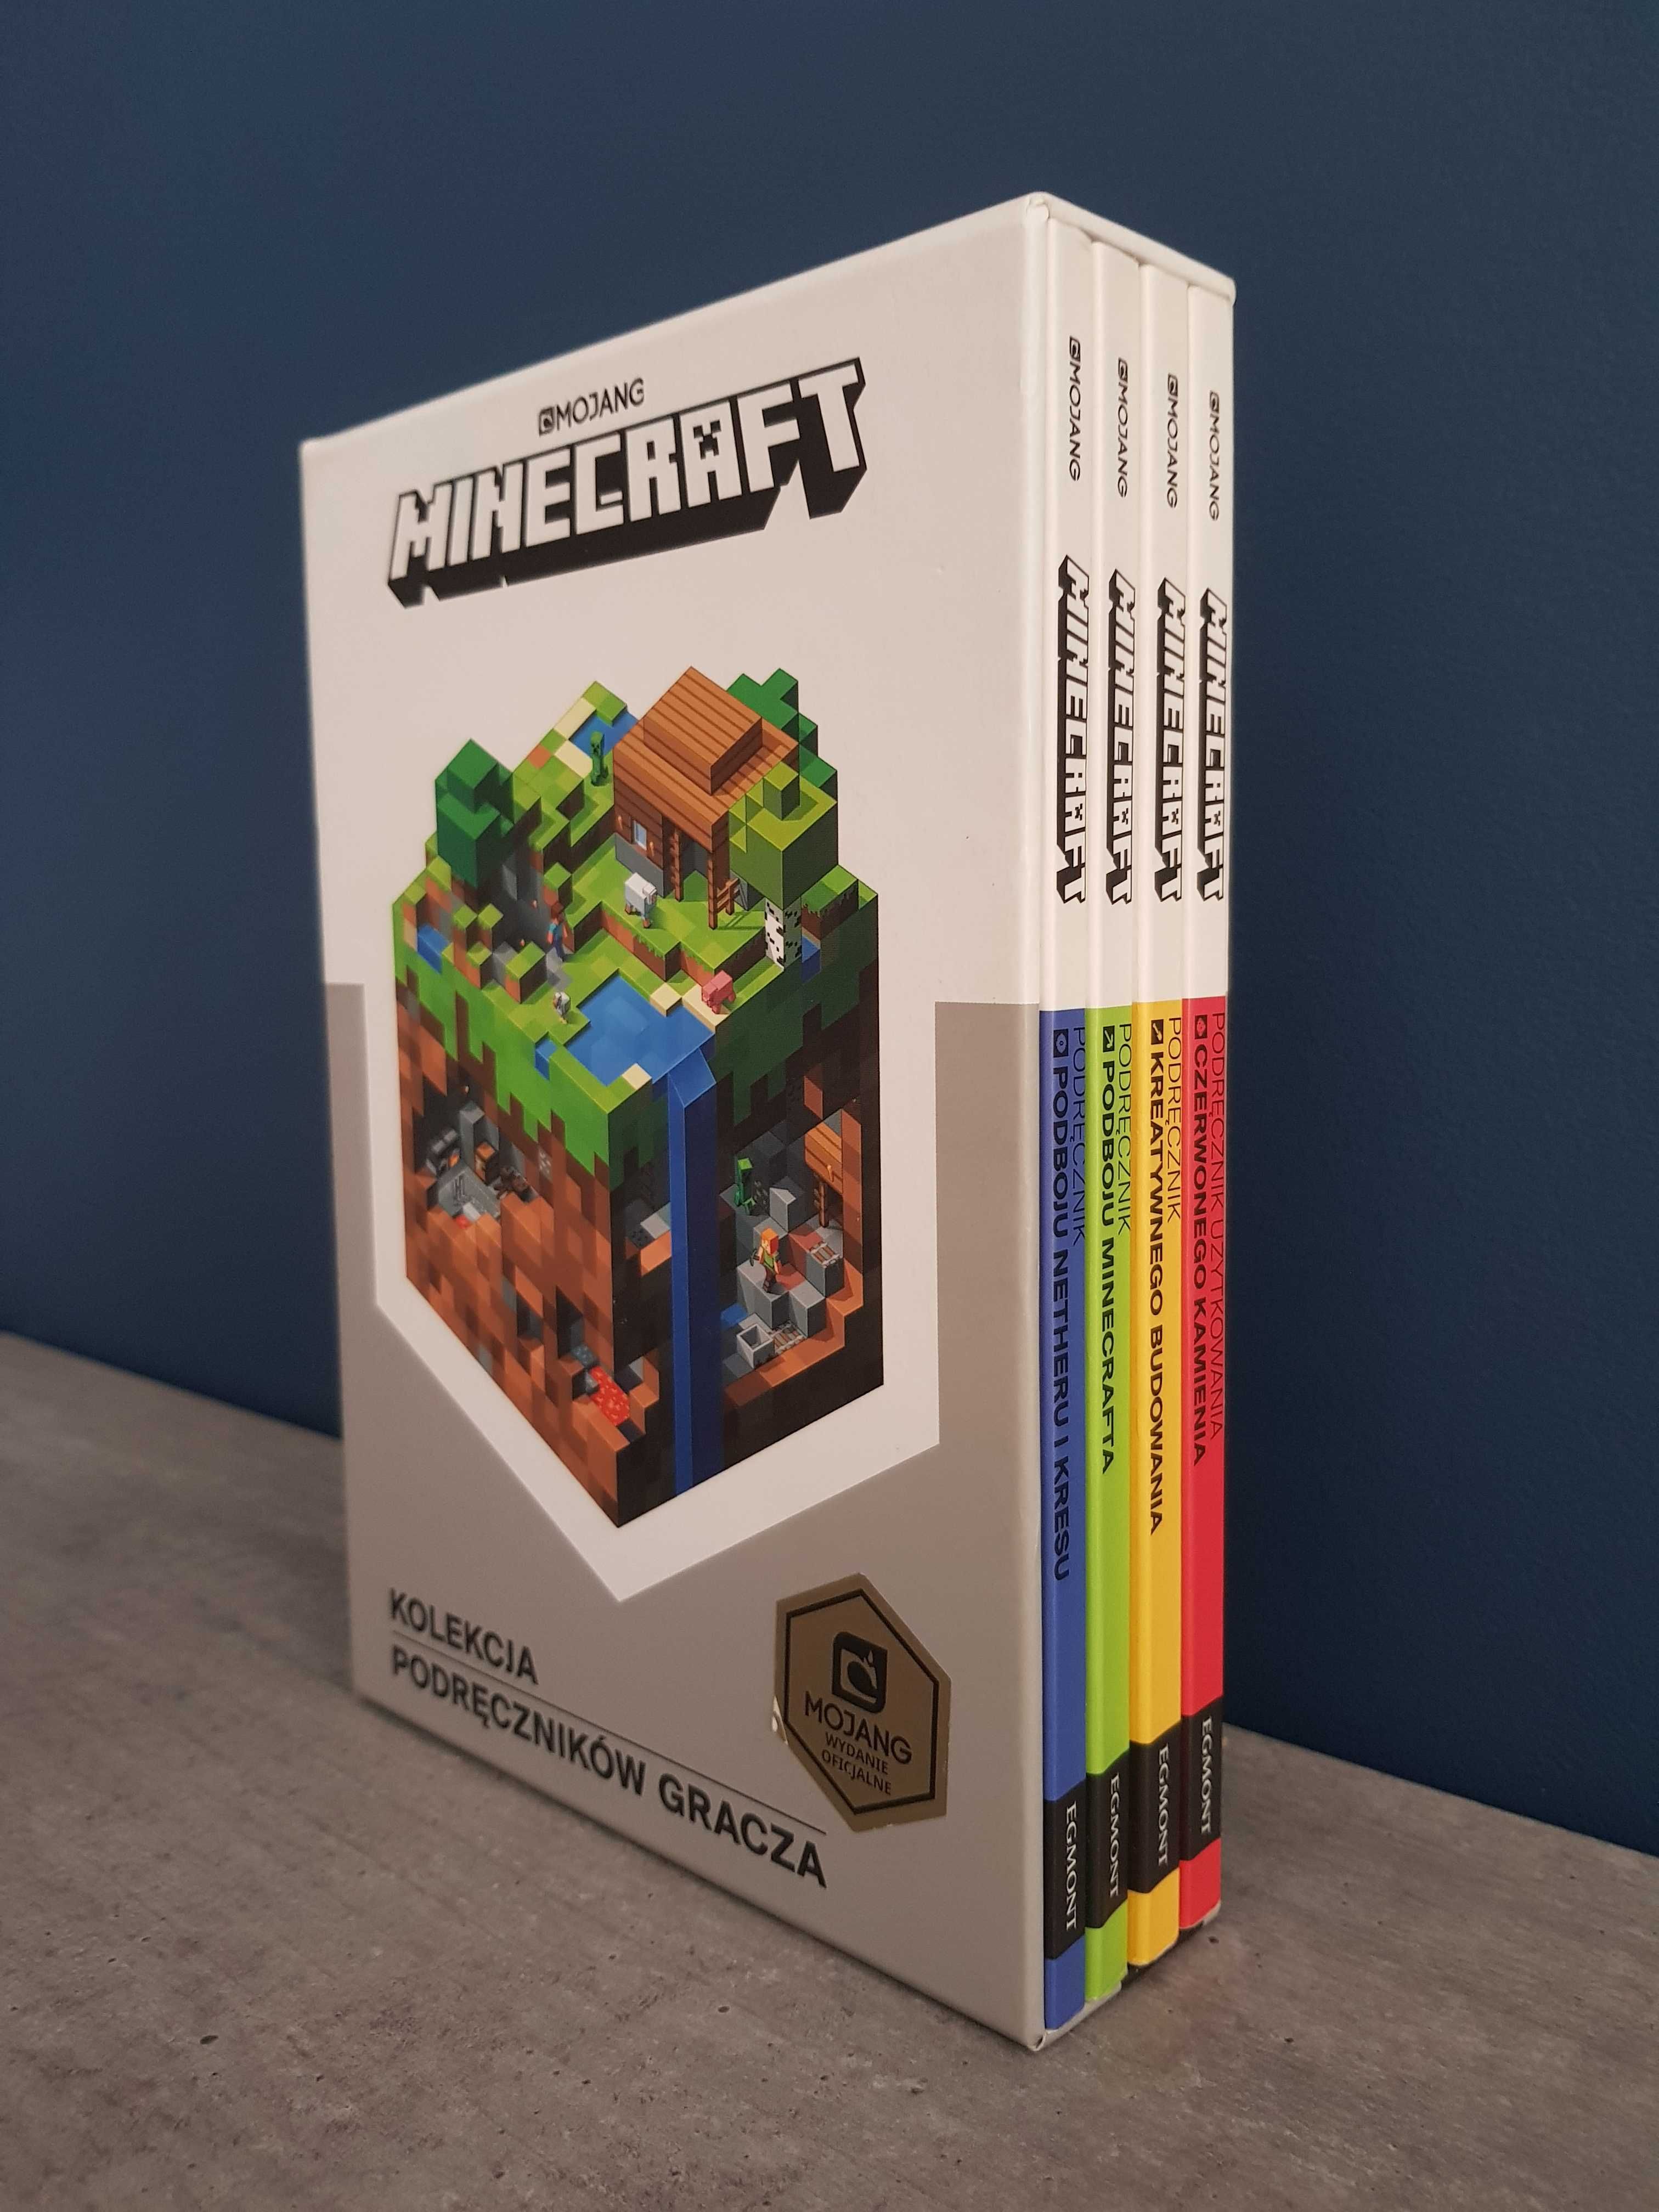 Kolekcja podręczników gracza MINECRAFT